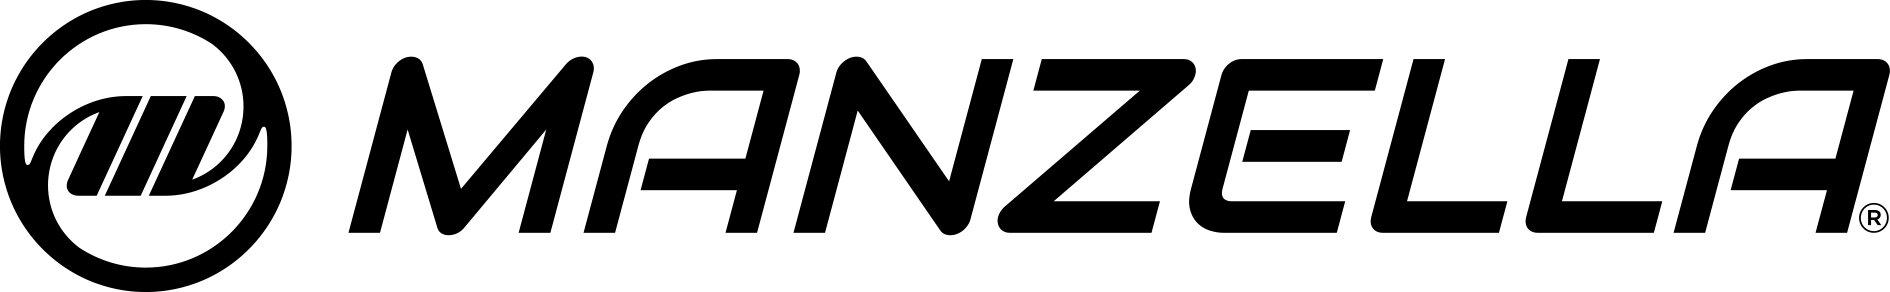 Manzella logo.jpg